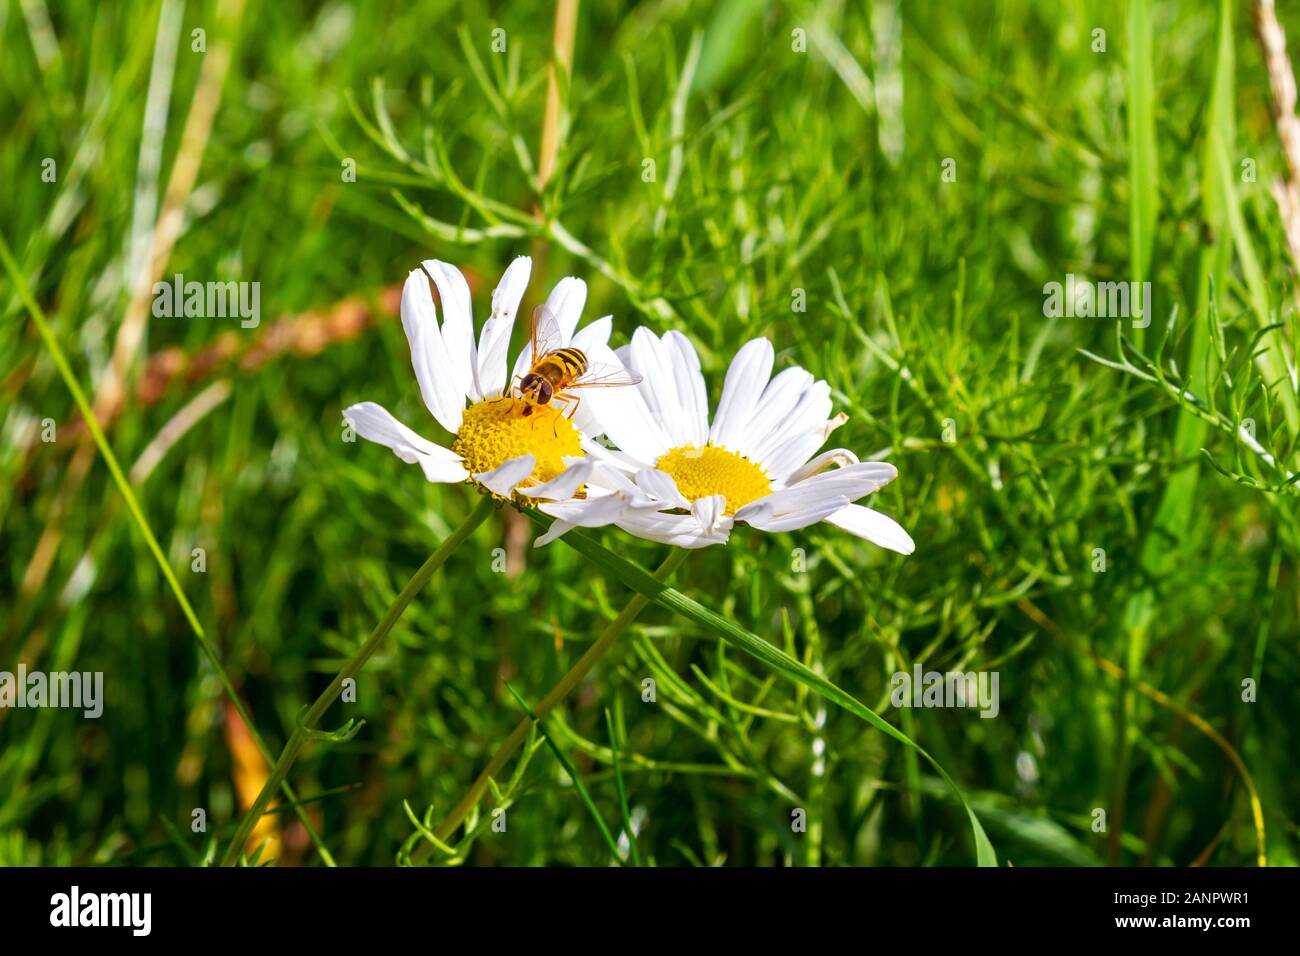 Biene sammelt Pollen von Echinacea coneflower Blume. Echinacea purpurea, PowWow White, Gelber Kegelkopf und weiße Blütenblätter. Garten in Irland Stockfoto